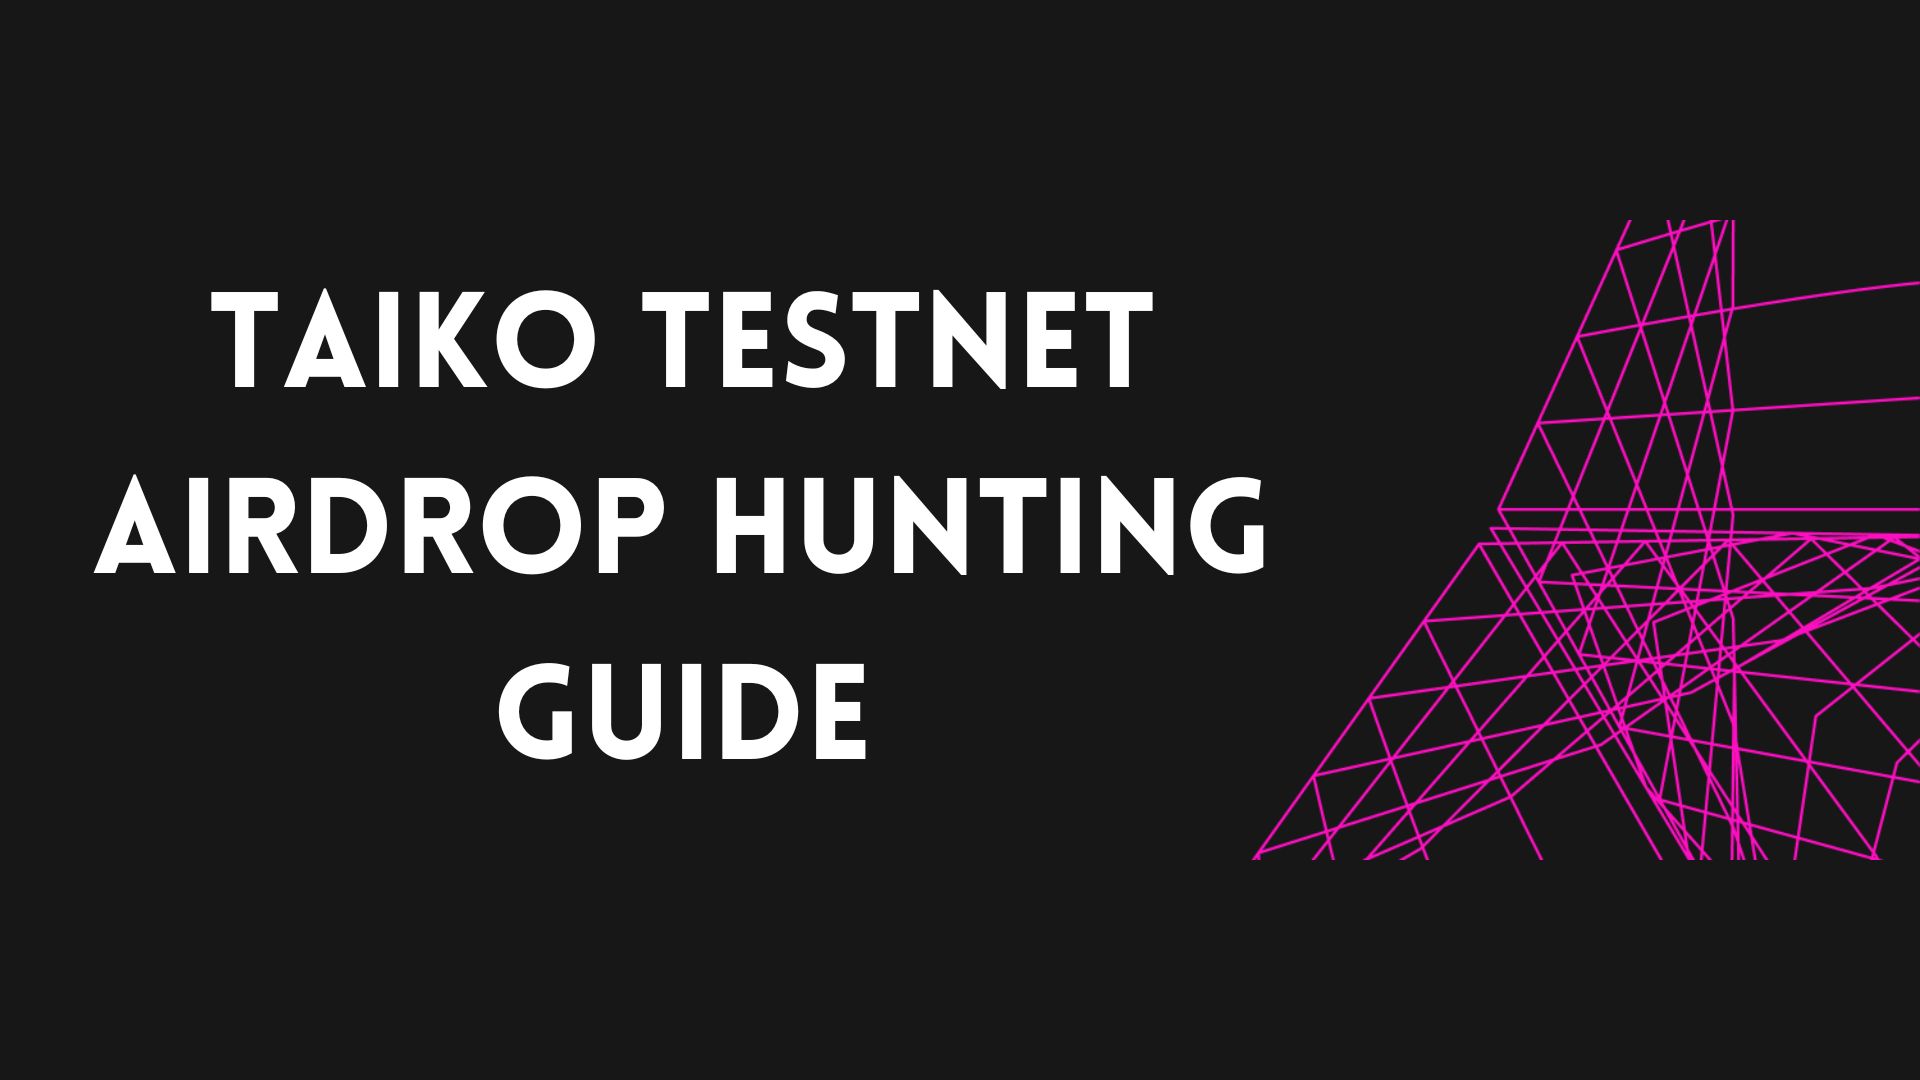 Taiko Airdrop Hunting Testnet Guide.jpg